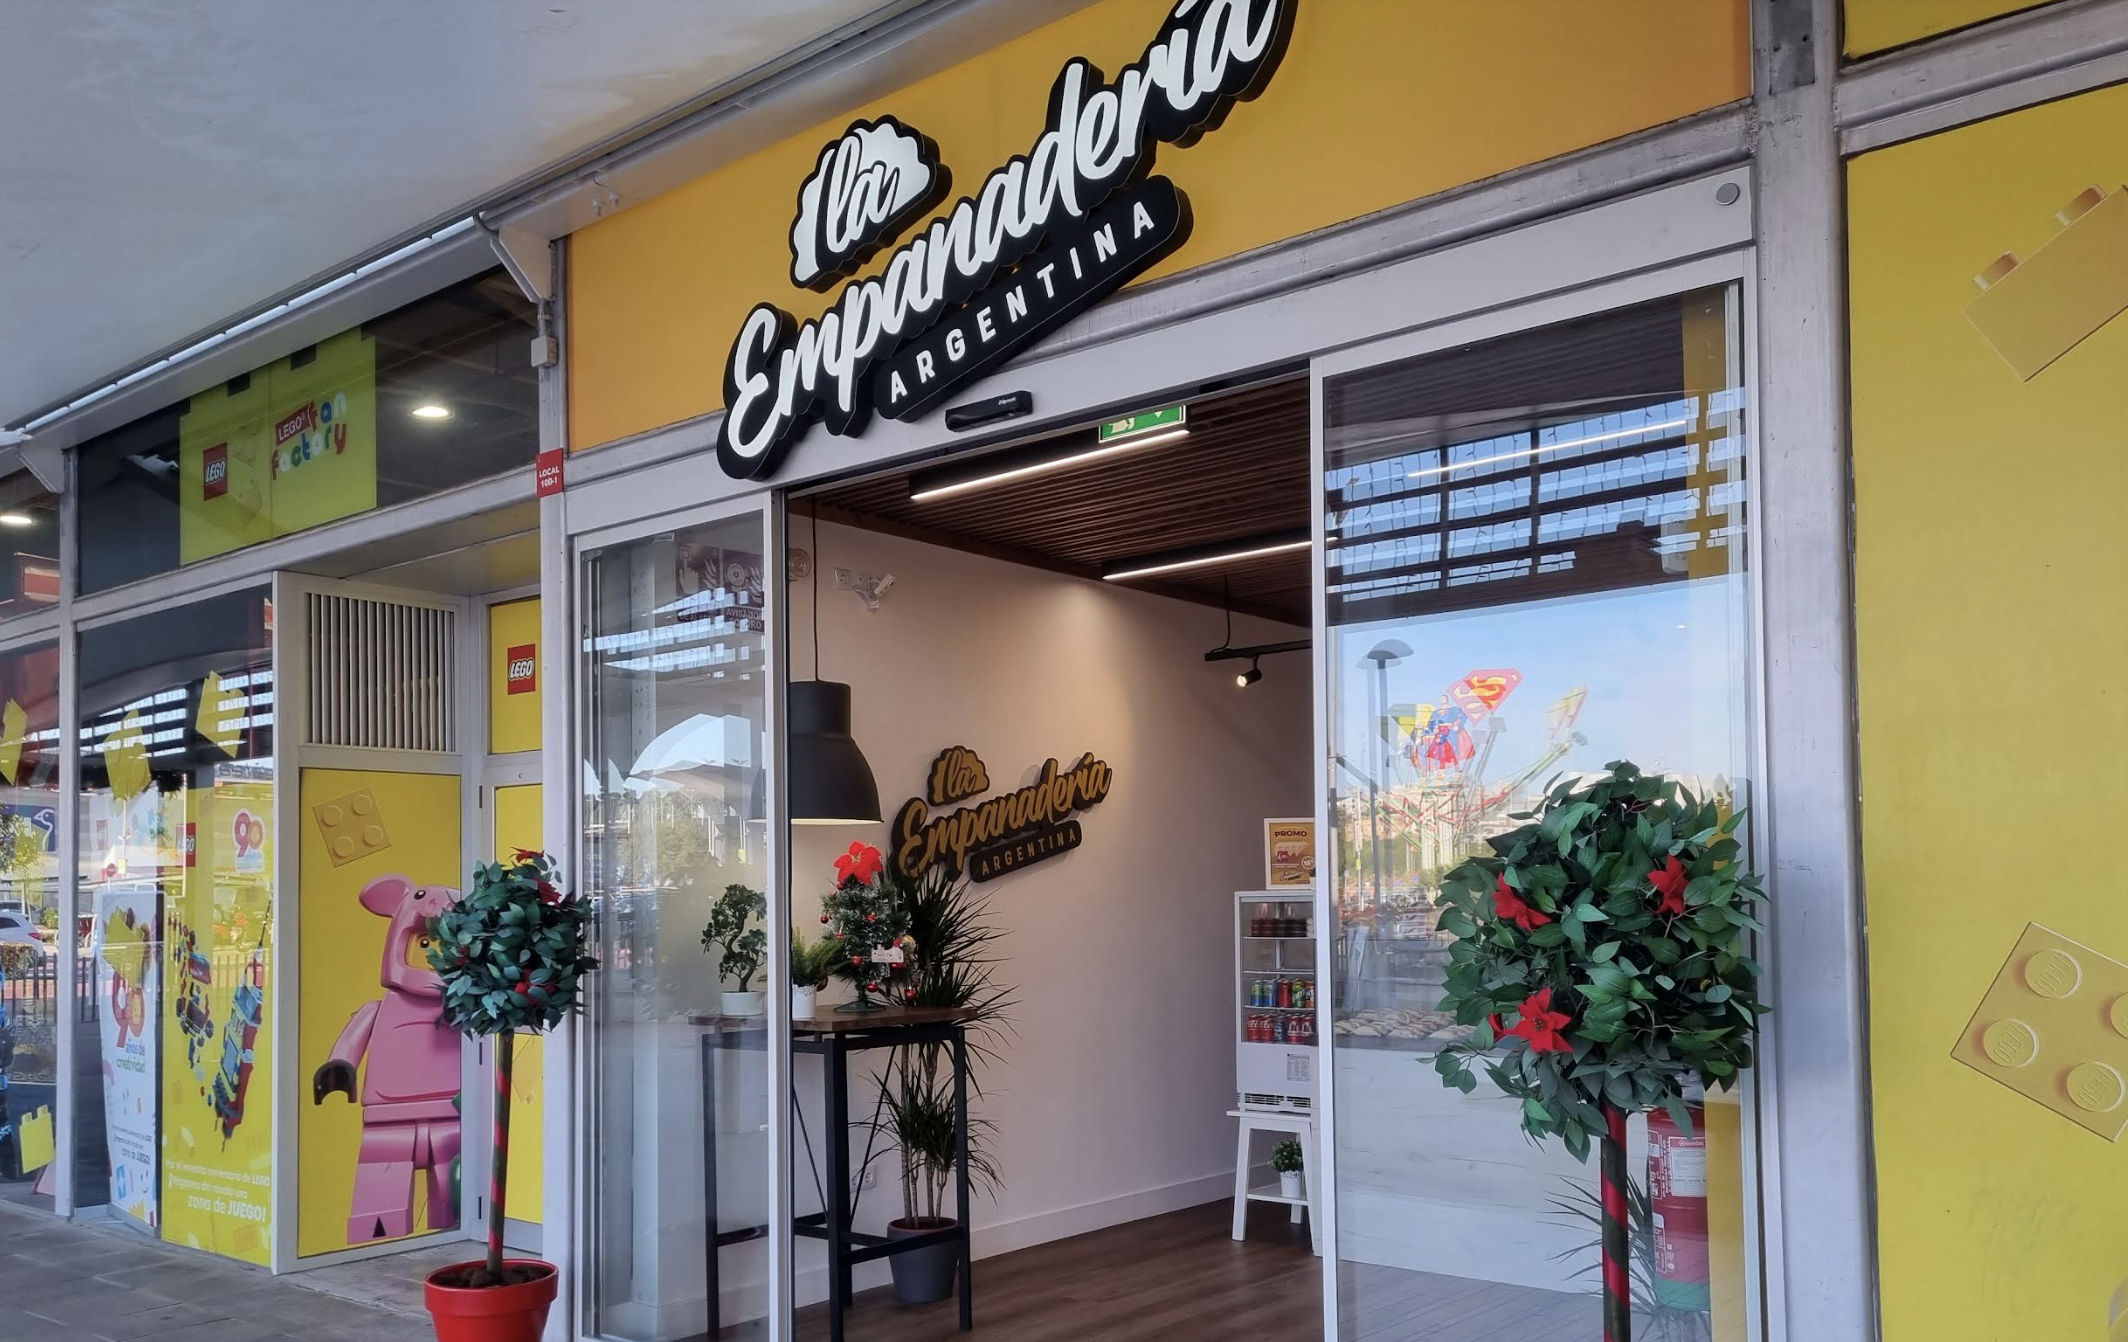 Fachada del nuevo local de empanadillas argentina que ha abierto en Jerez.